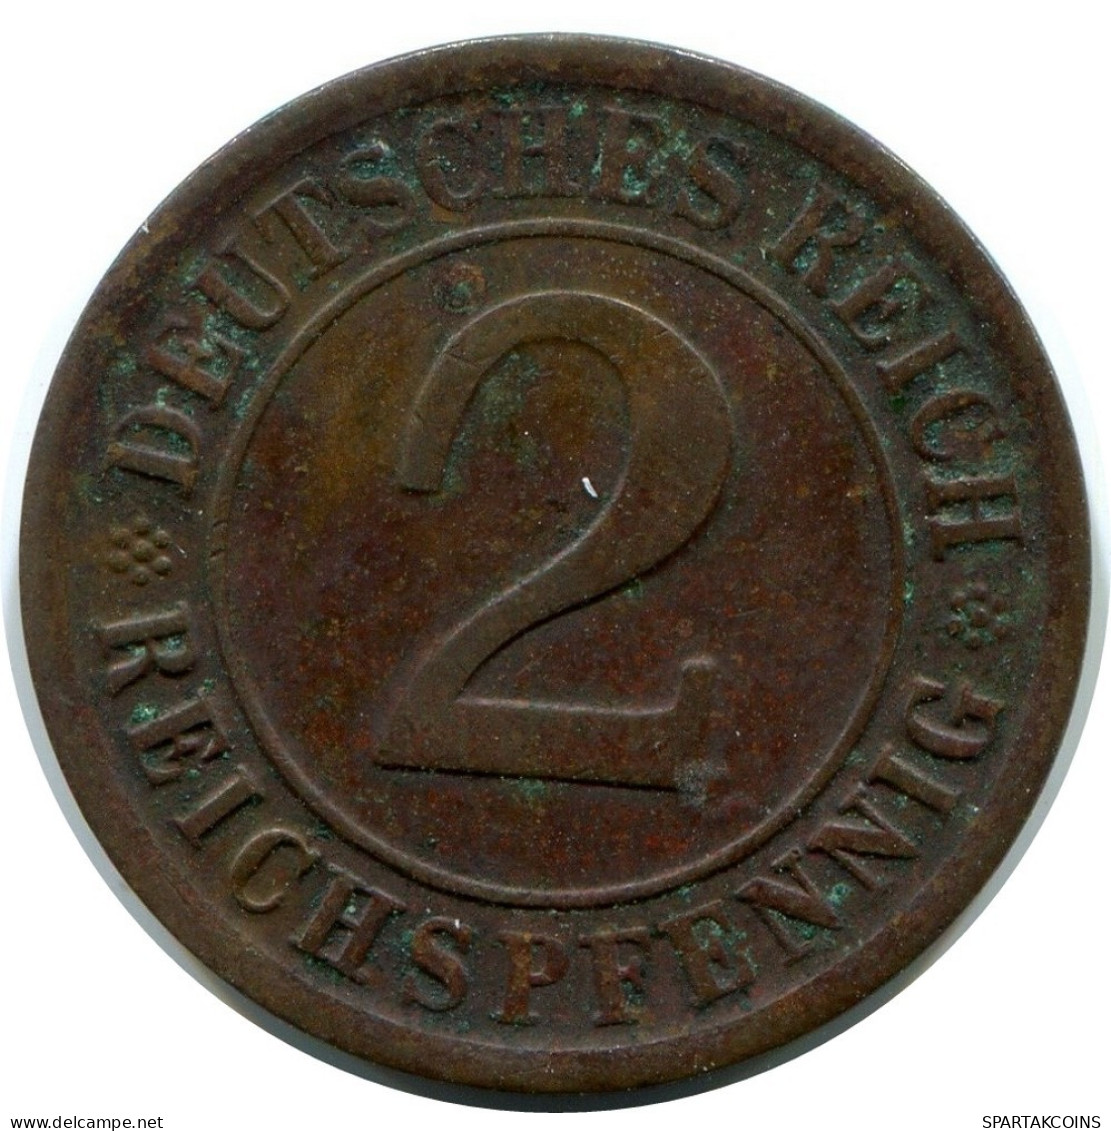 2 REICHSPFENNIG 1924 A DEUTSCHLAND Münze GERMANY #DA780.D.A - 2 Rentenpfennig & 2 Reichspfennig